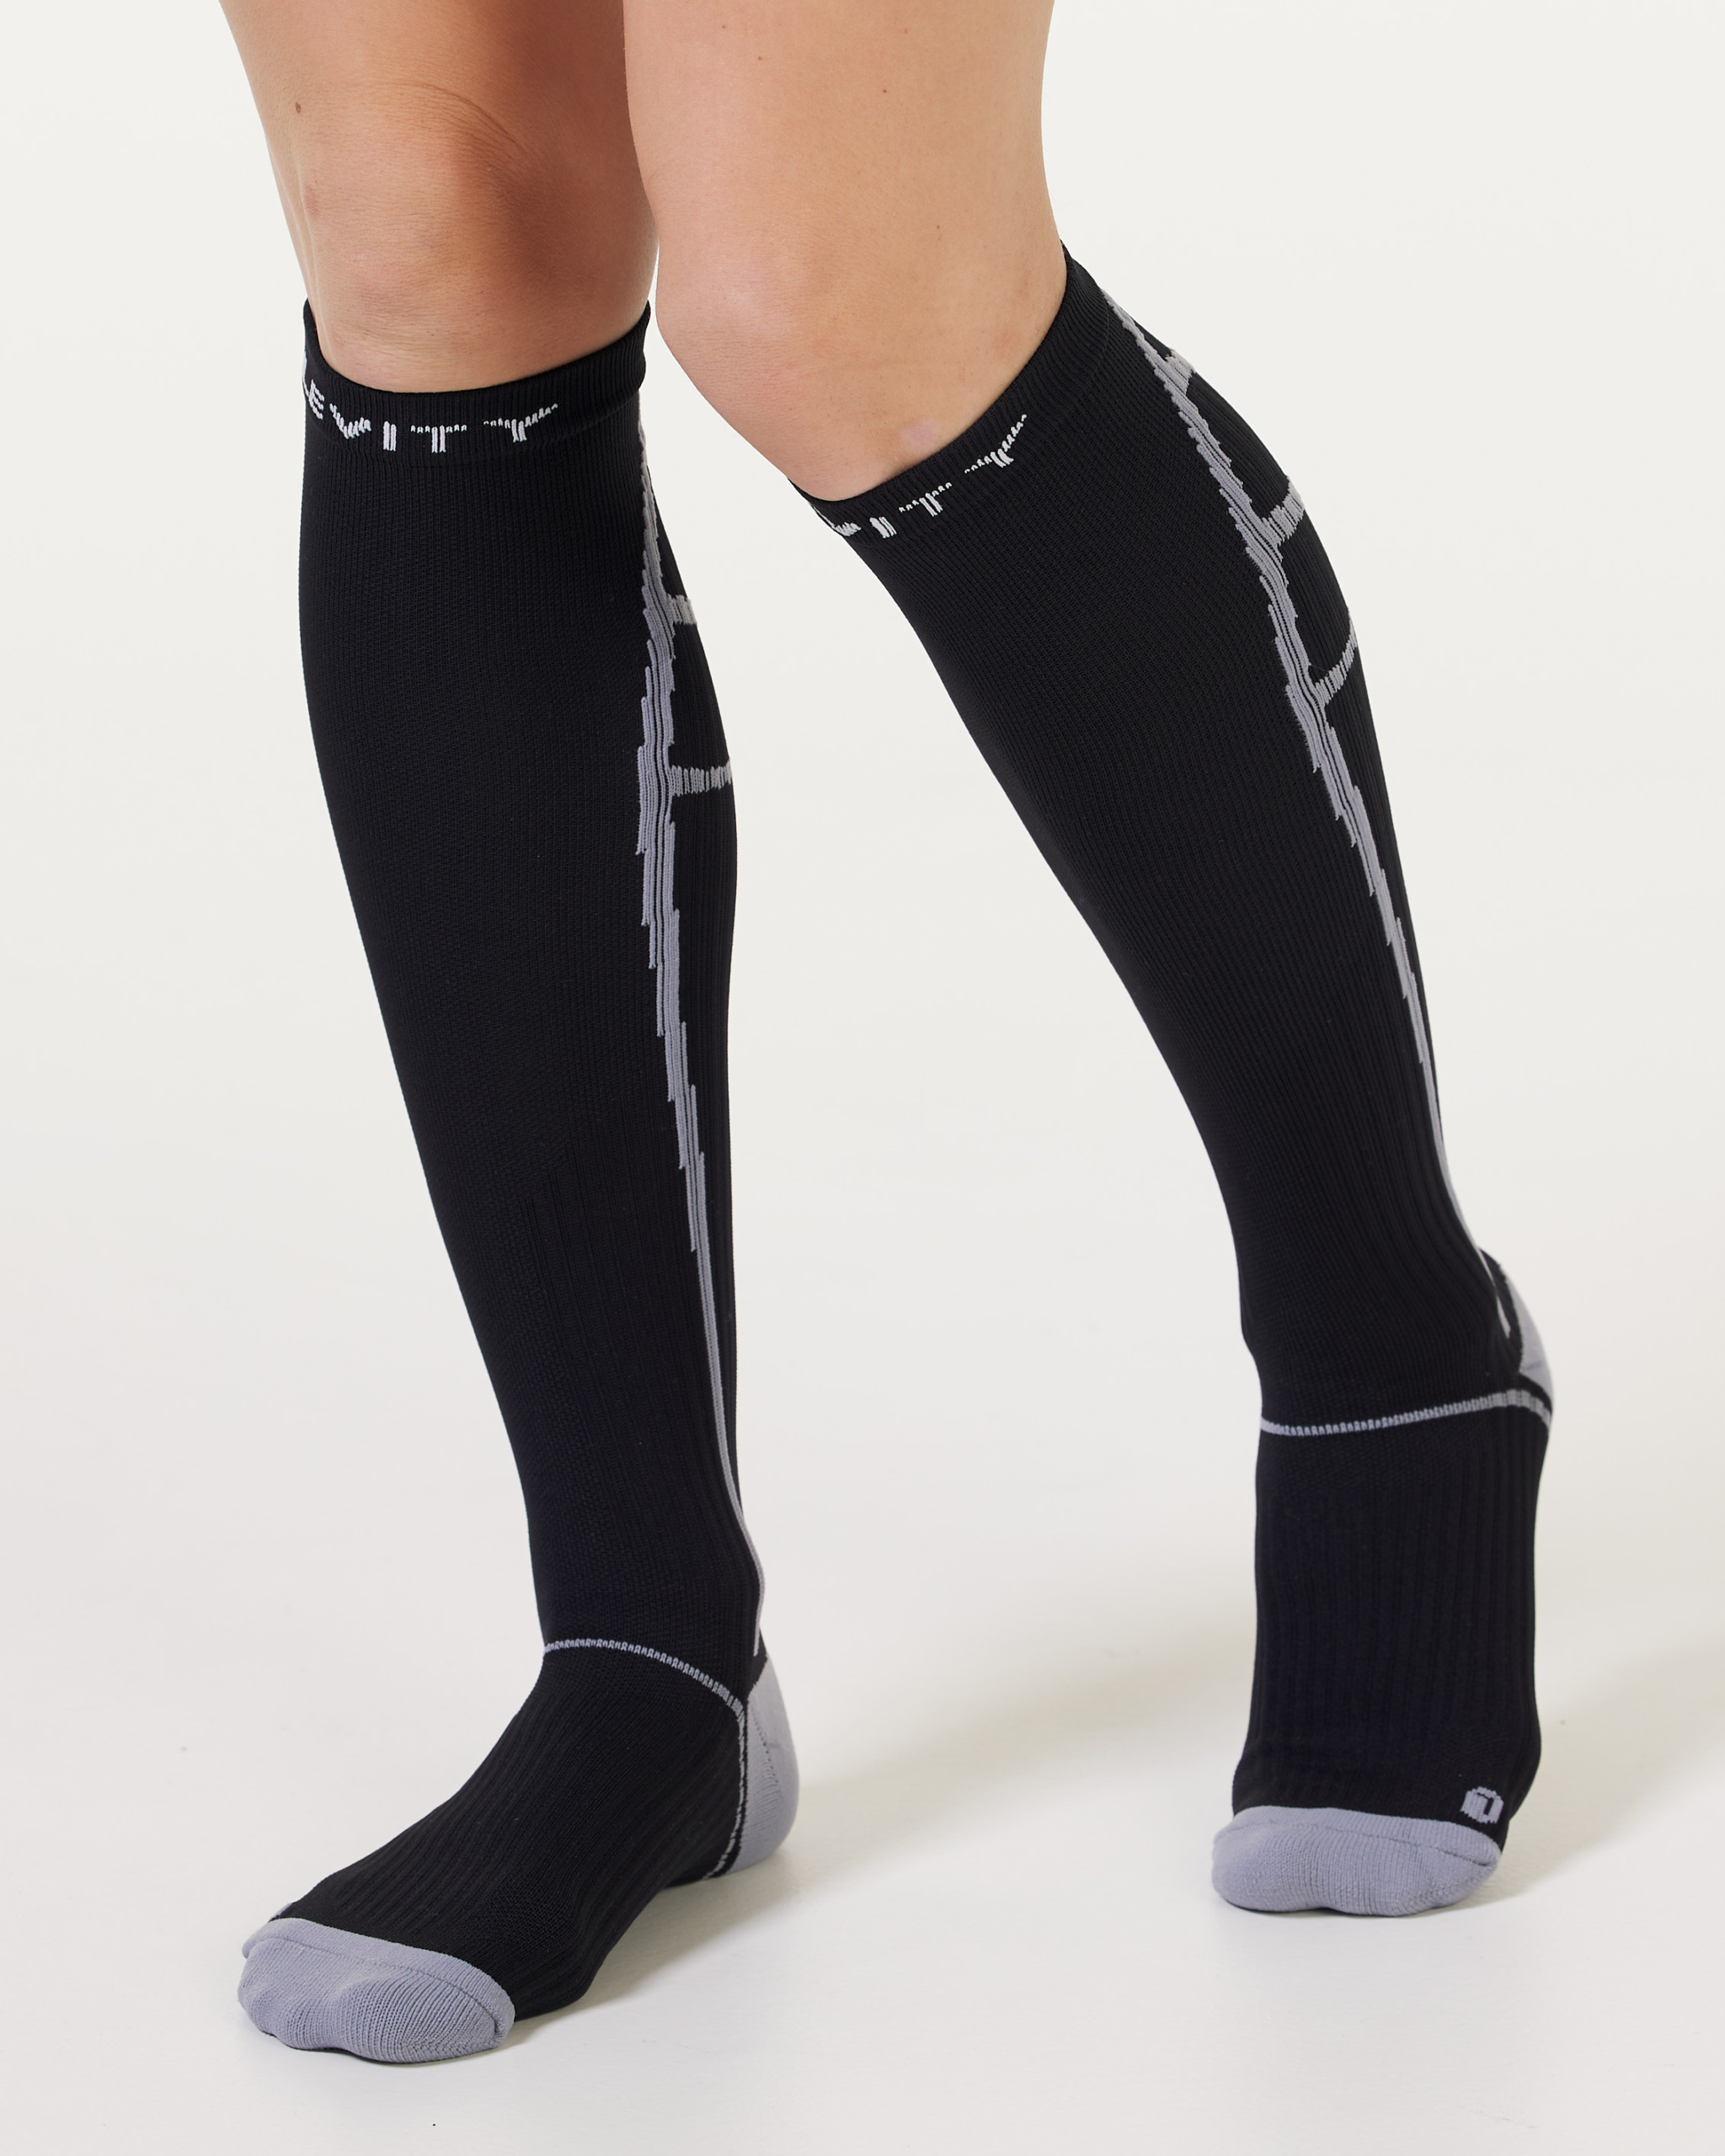 Forbedre Latterlig tommelfinger LEVITY Performance Compression Socks Black/Grey - Tights.no